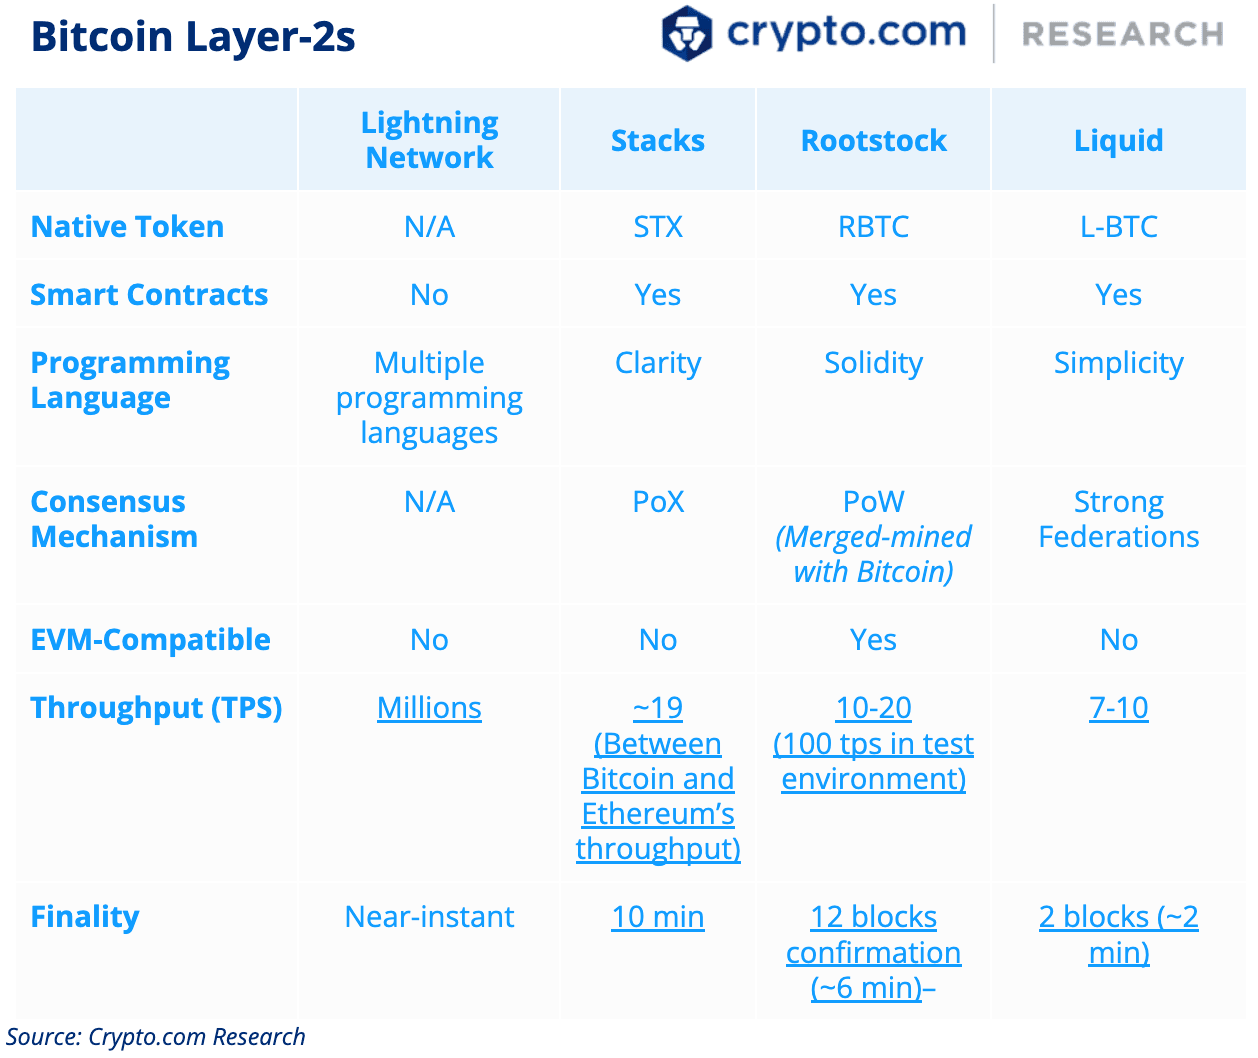 Bitcoin Layer-2s